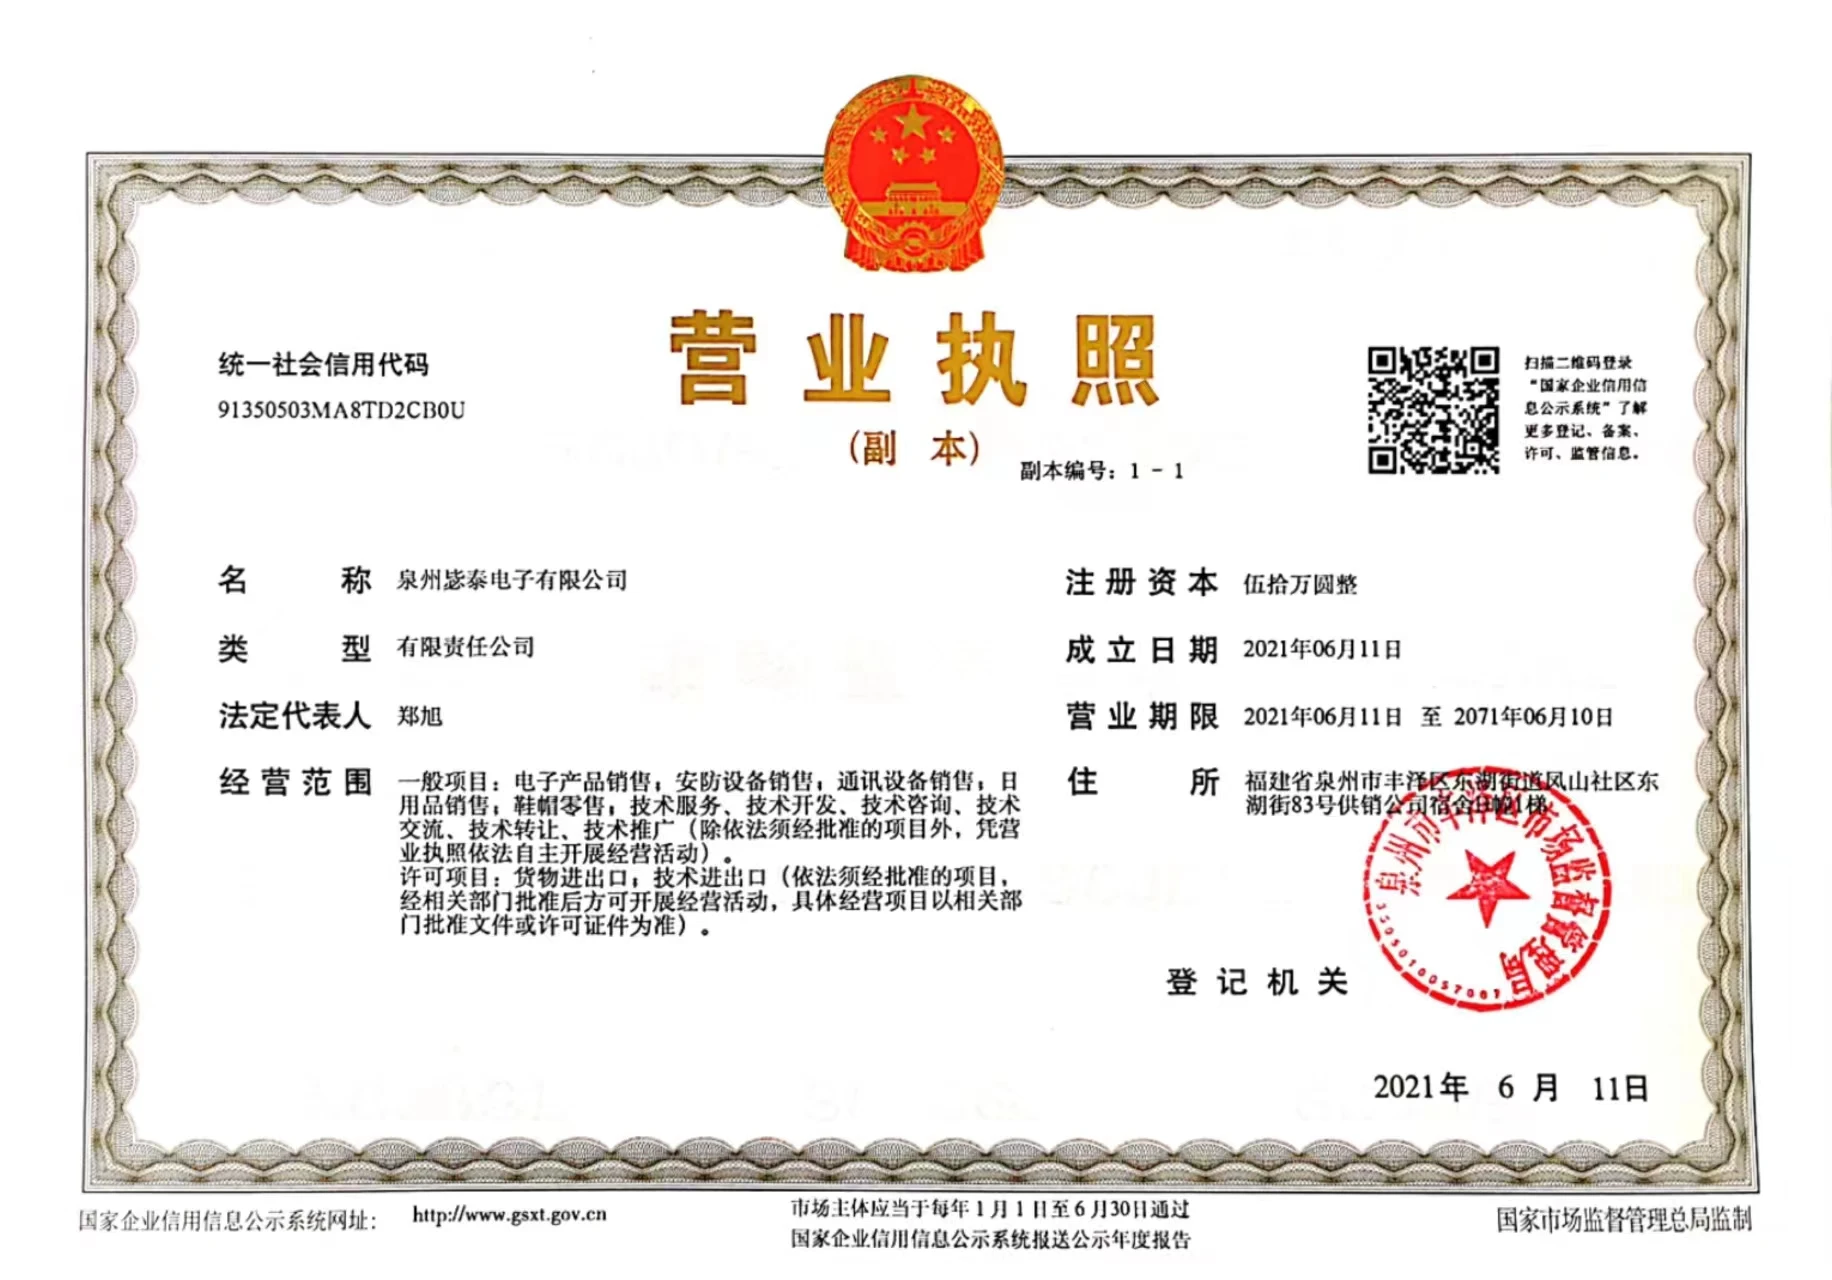 Company Overview - Quanzhou Bitai Electronics Co., Ltd.